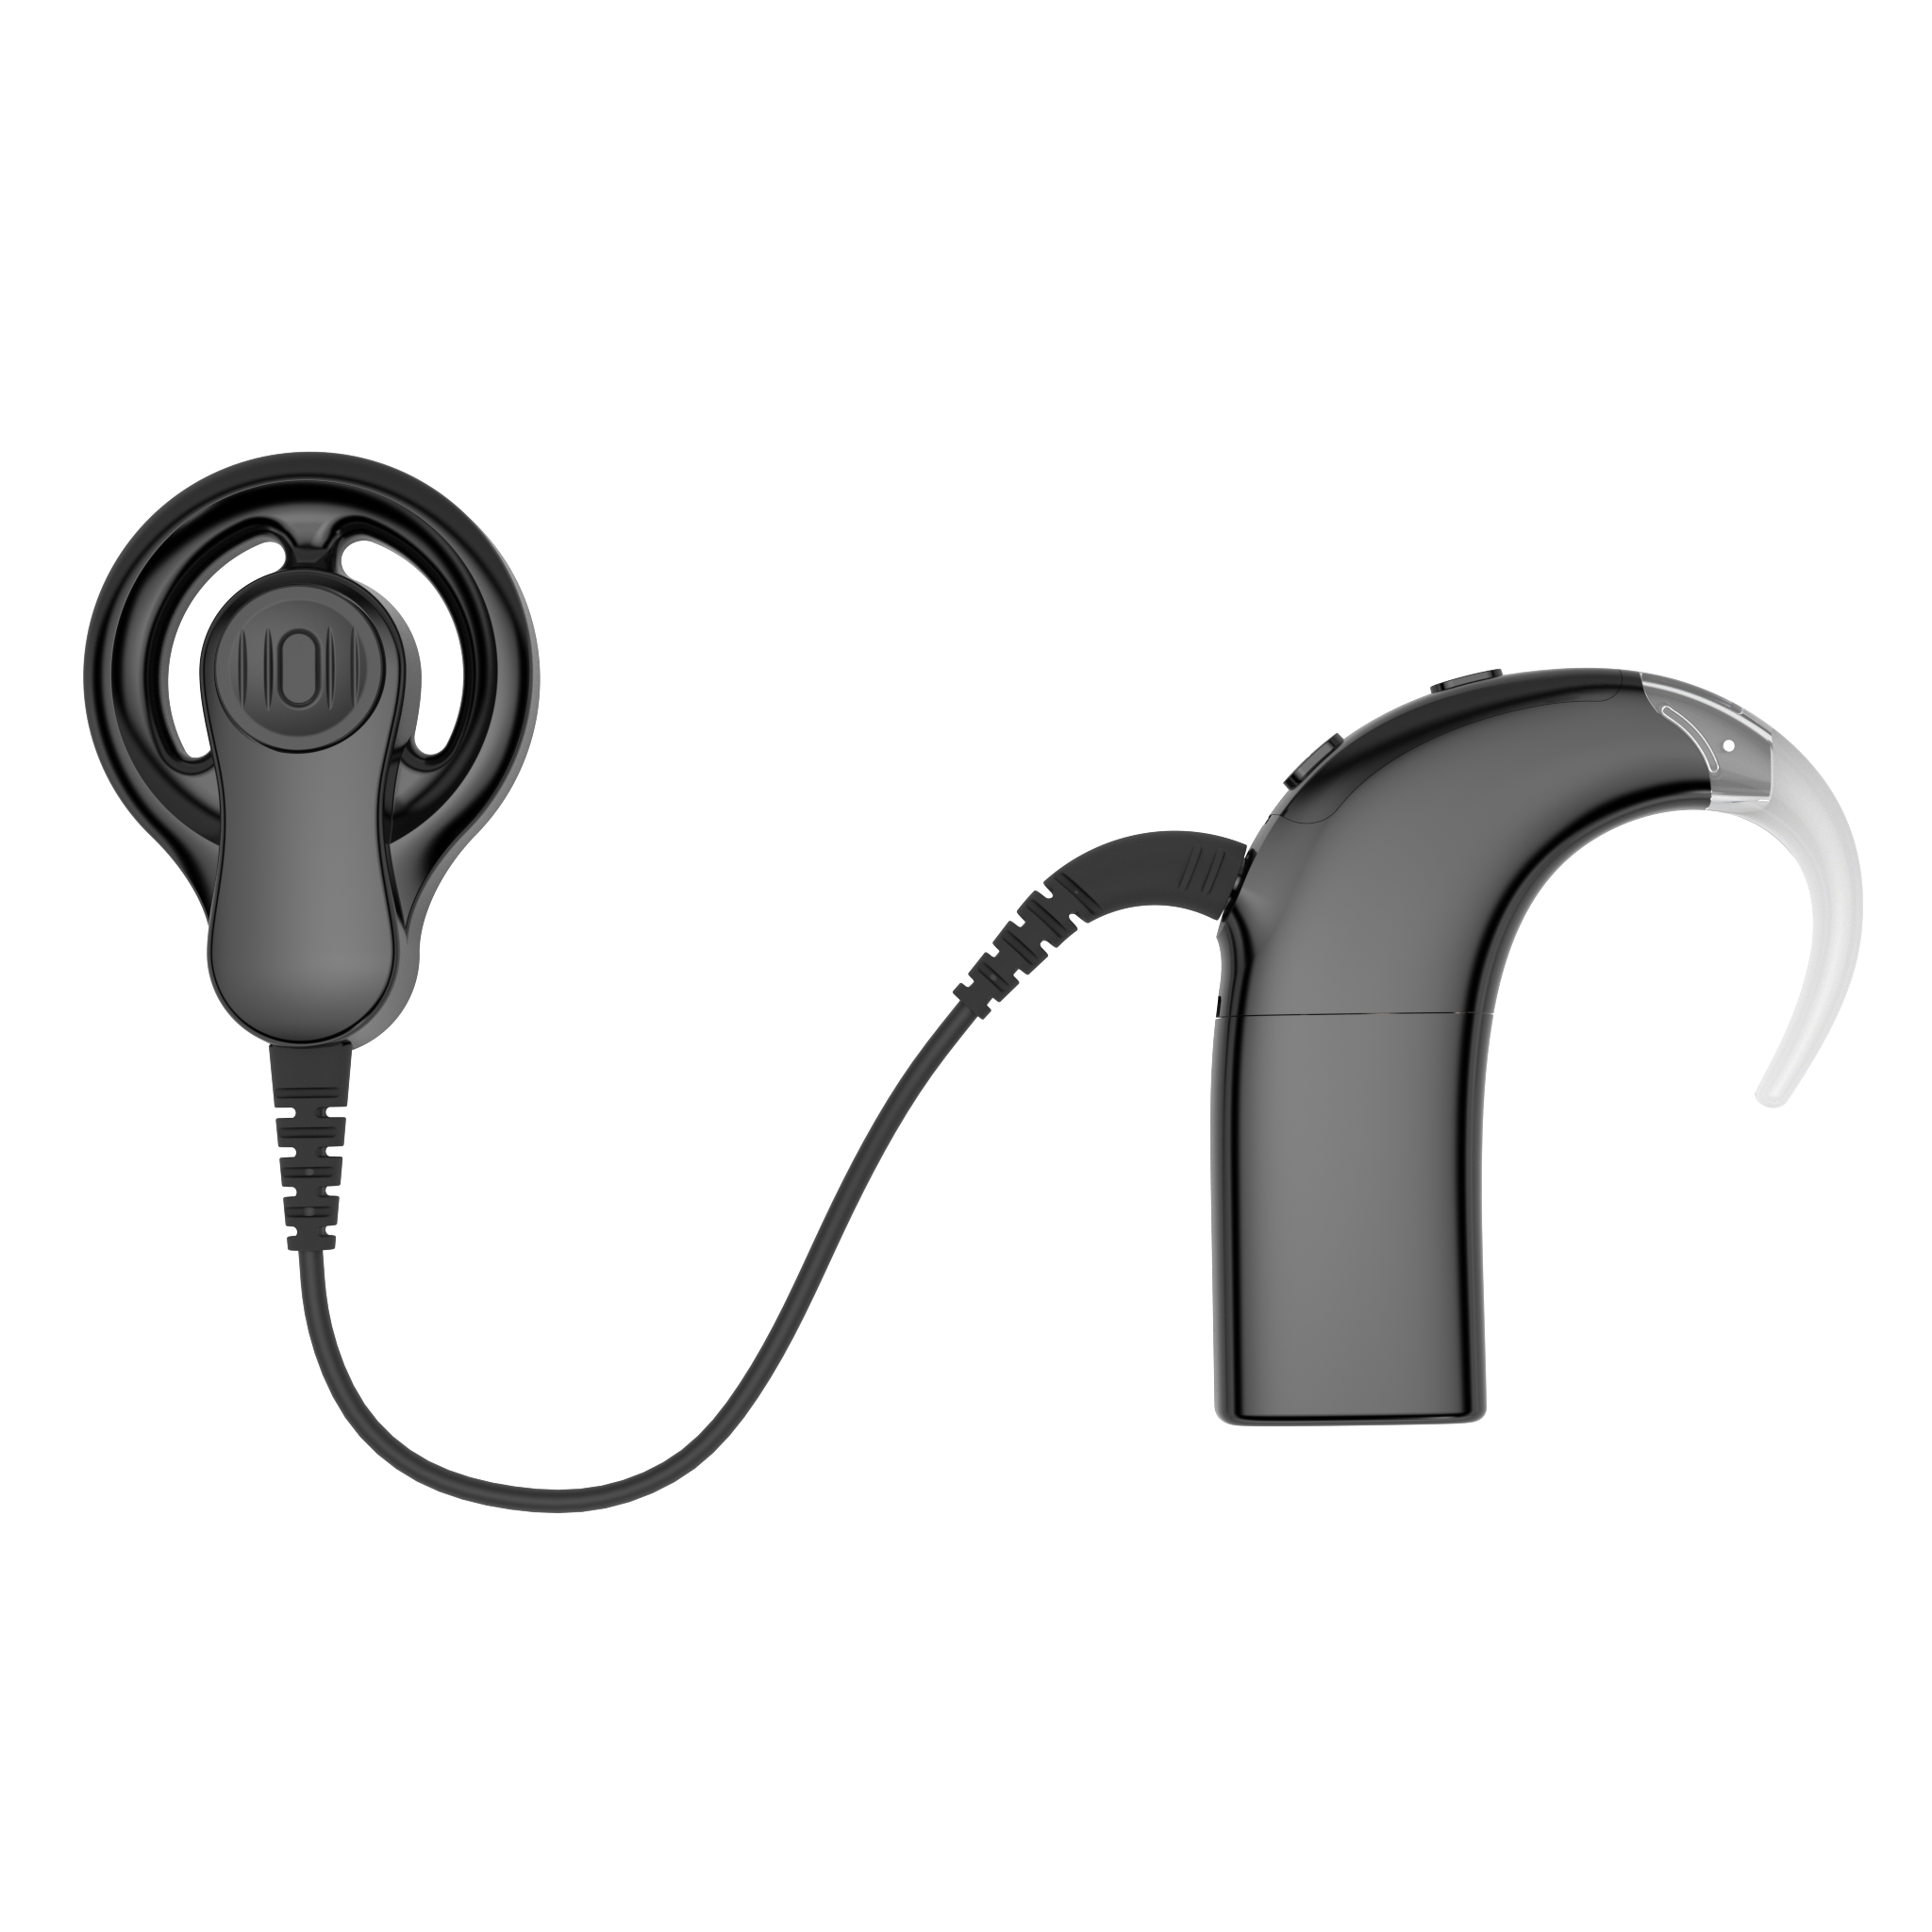 耳蜗死区与助听器移频 - 知乎